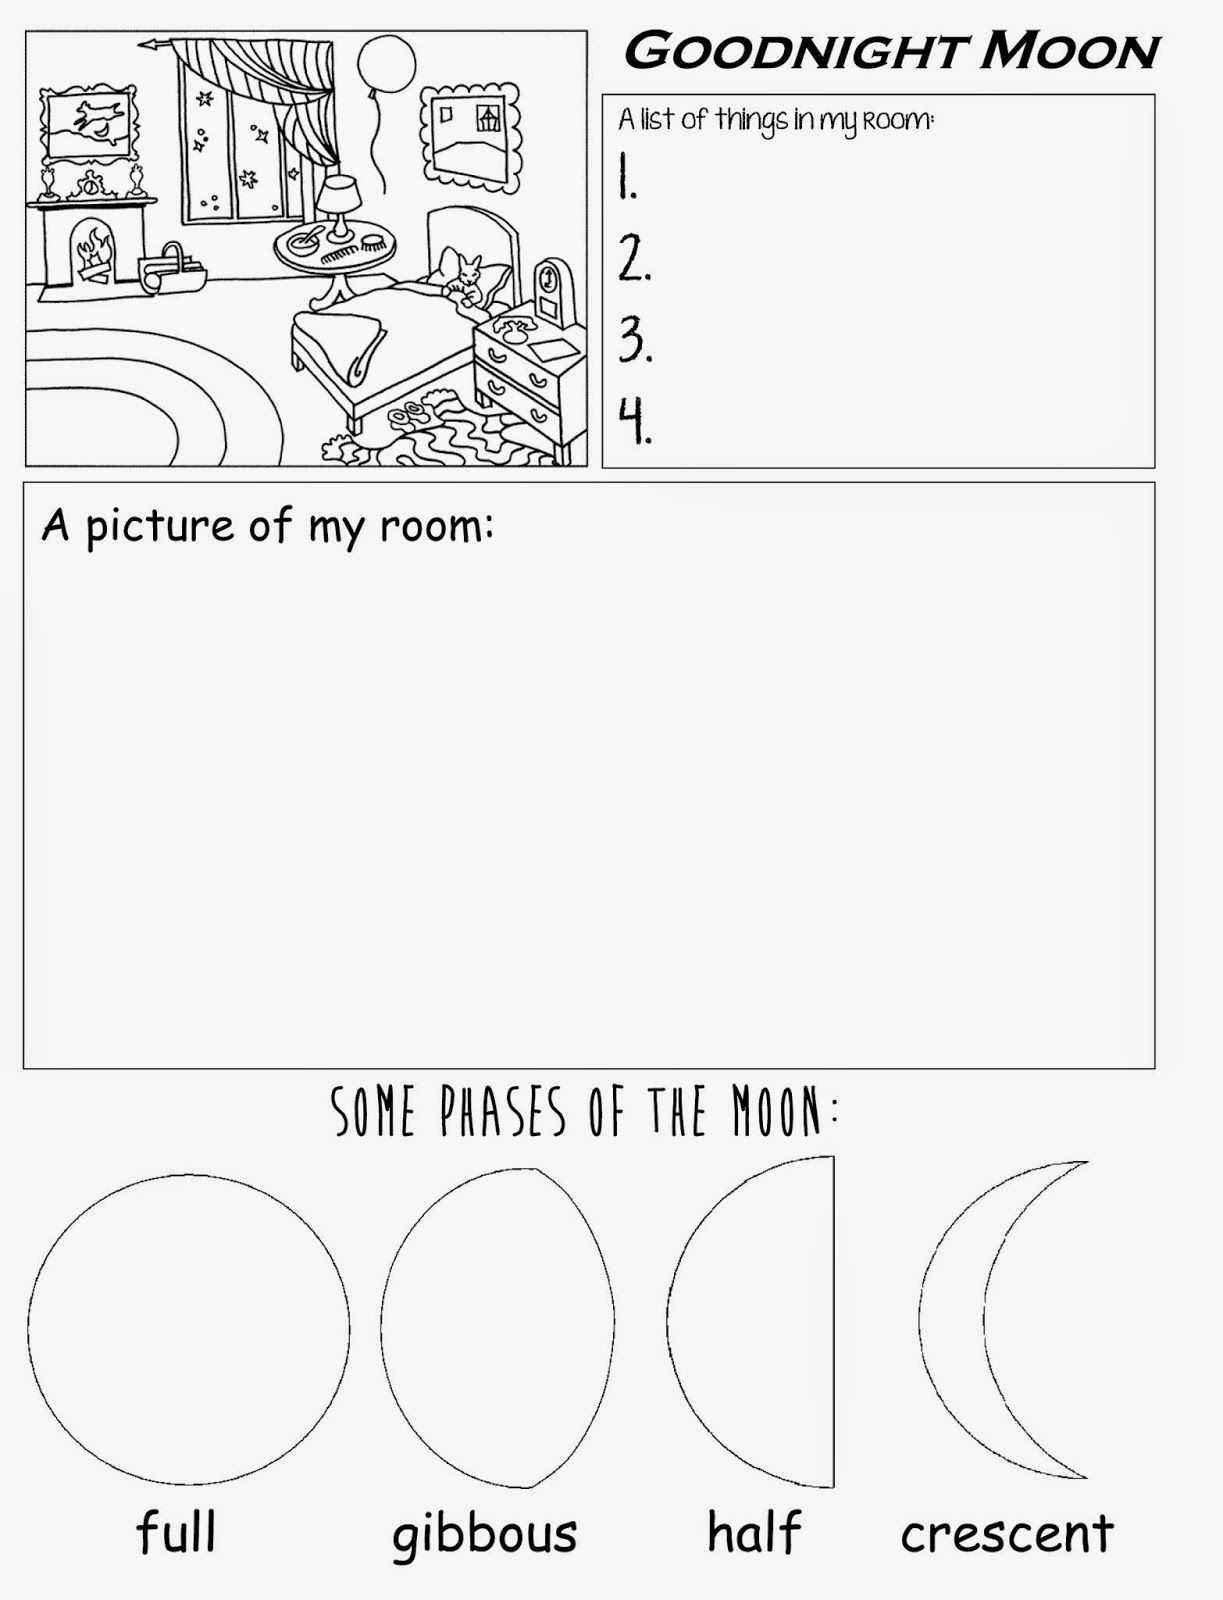 Goodnight Moon Free Printable Worksheet For Preschool Kindergarten - Free Printable Homework Worksheets